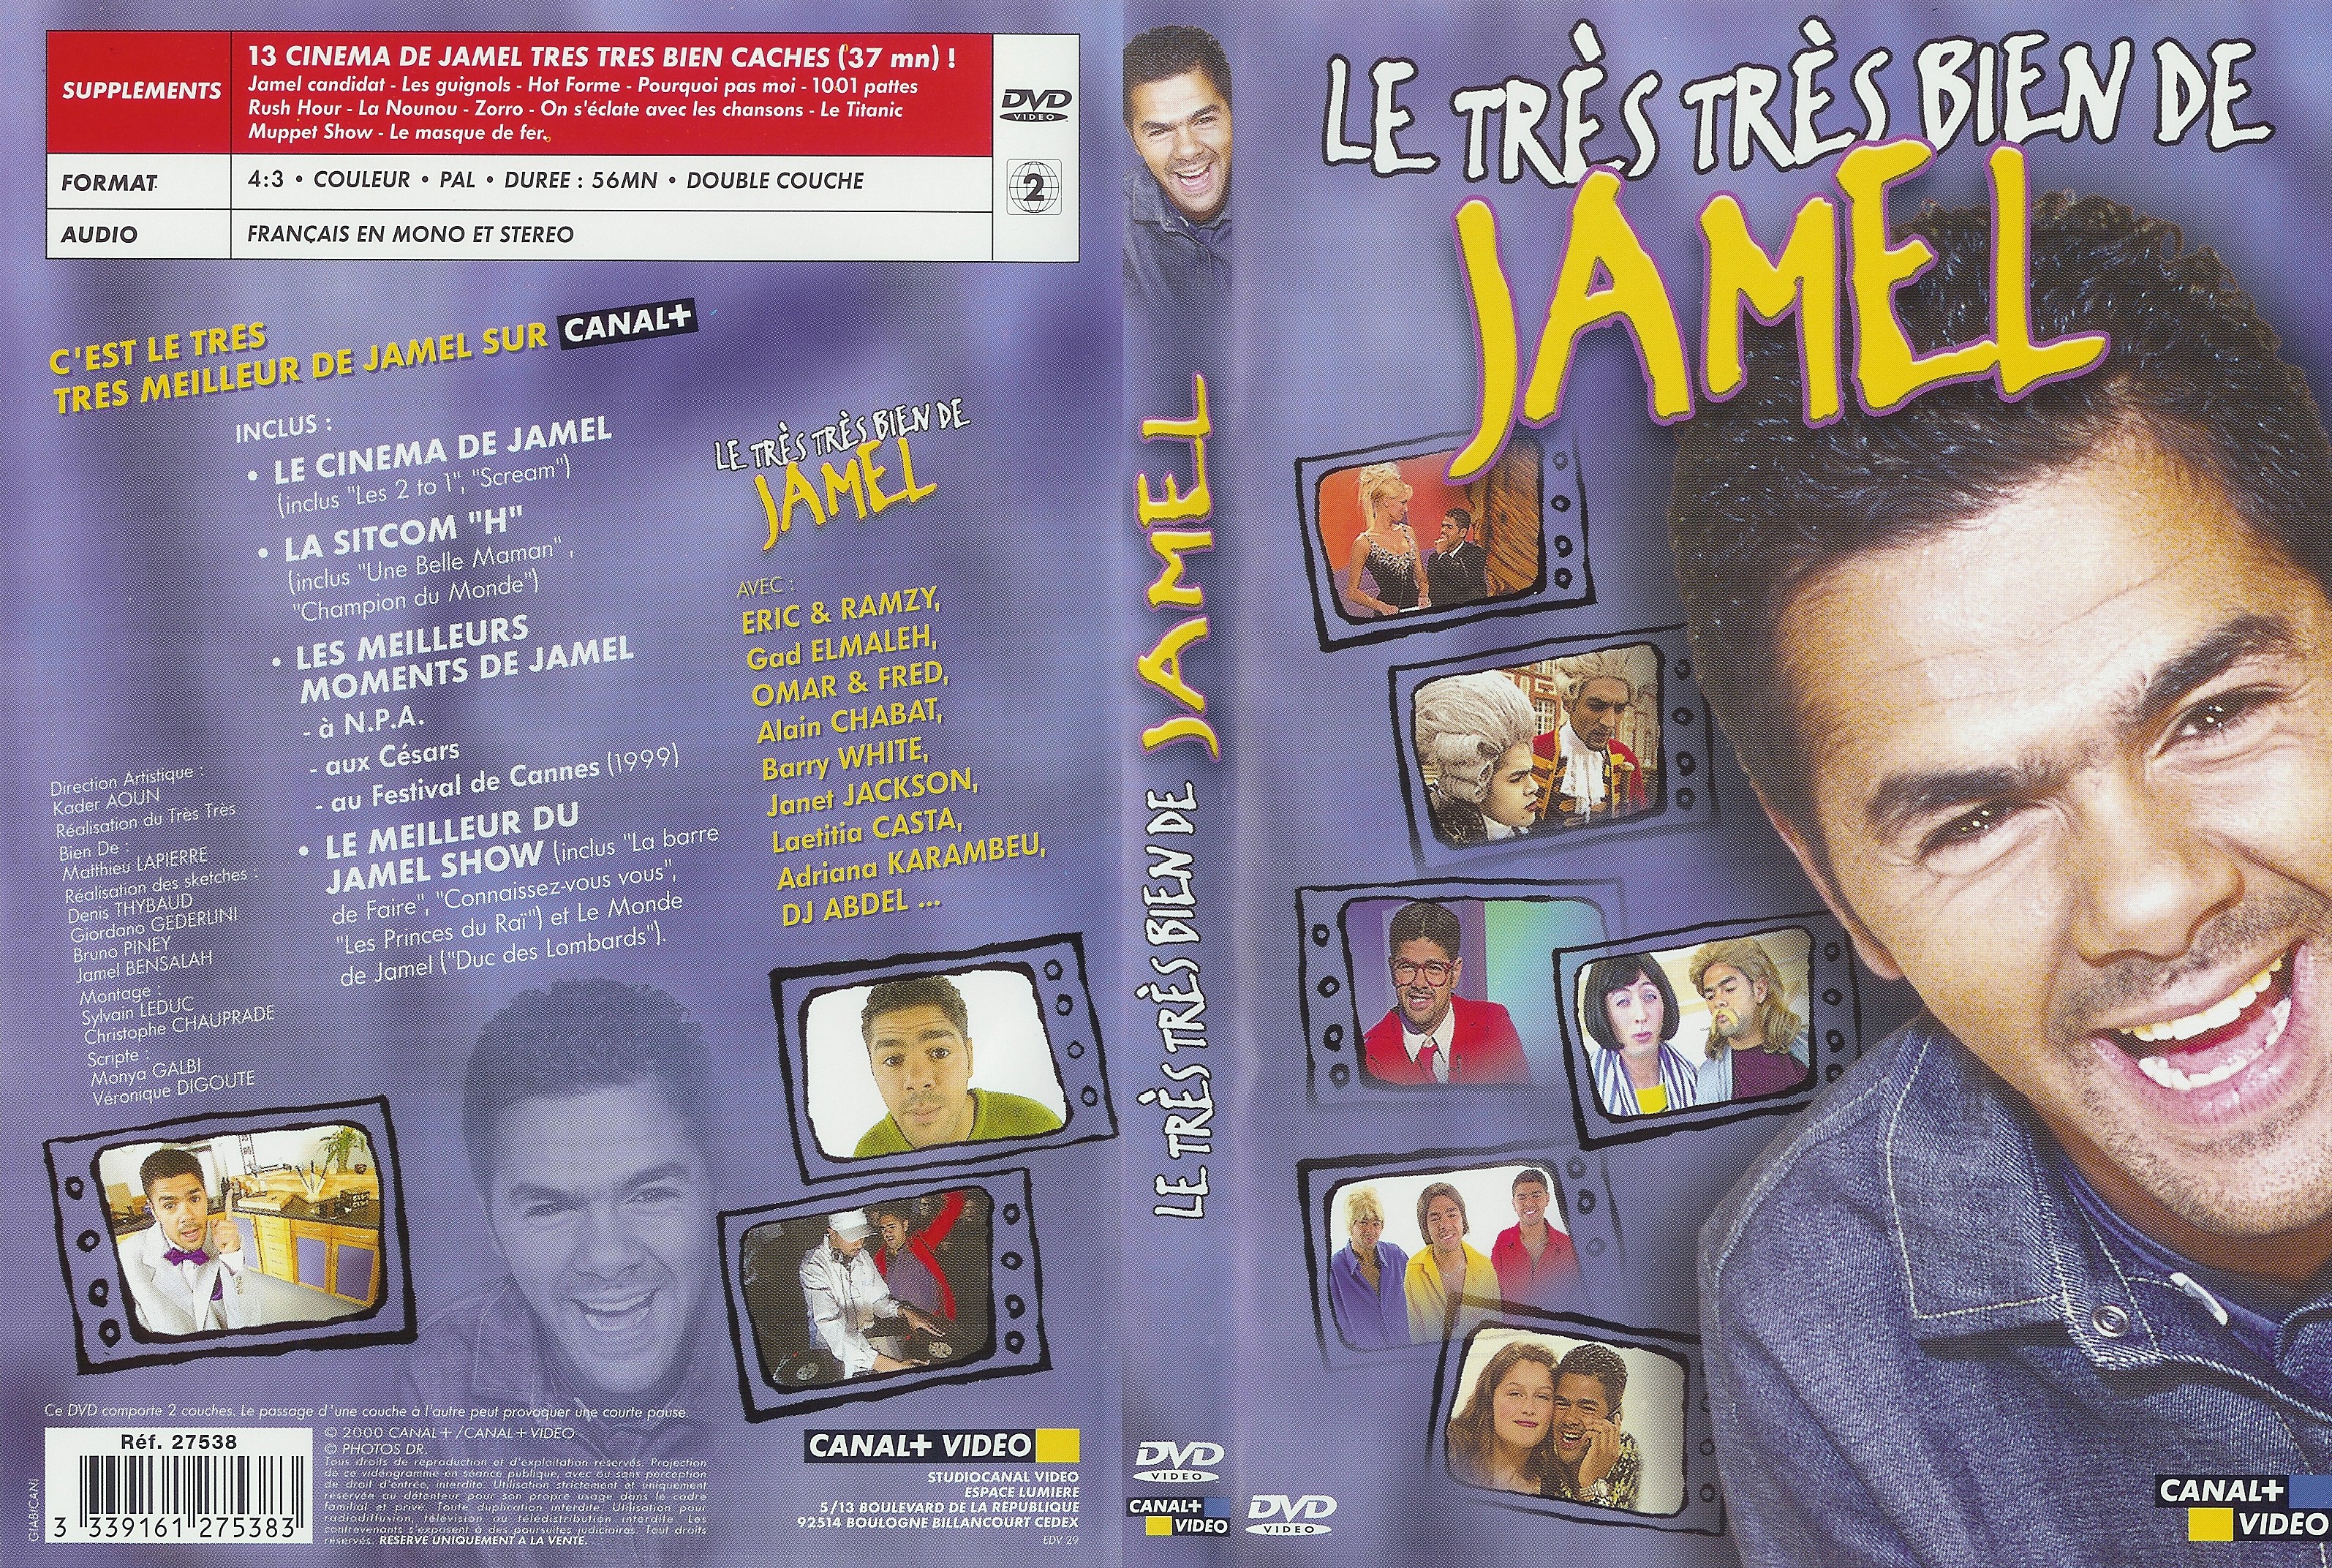 Jaquette DVD Le trs trs bien de Jamel